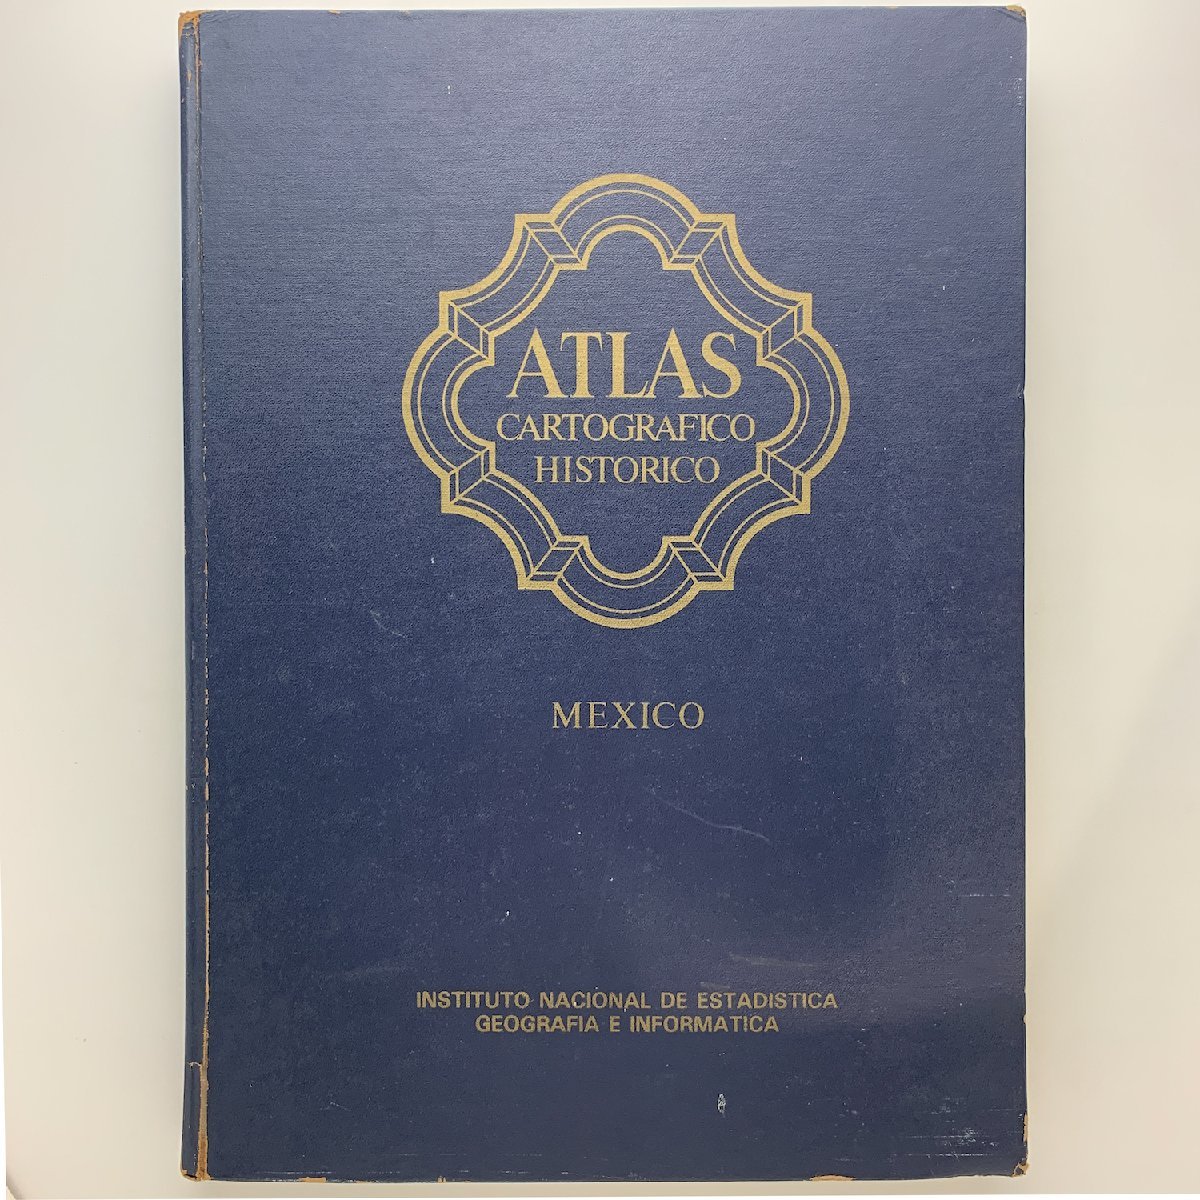  Mexico map Atlas Cartografico Historico MEXICO 1988 year 